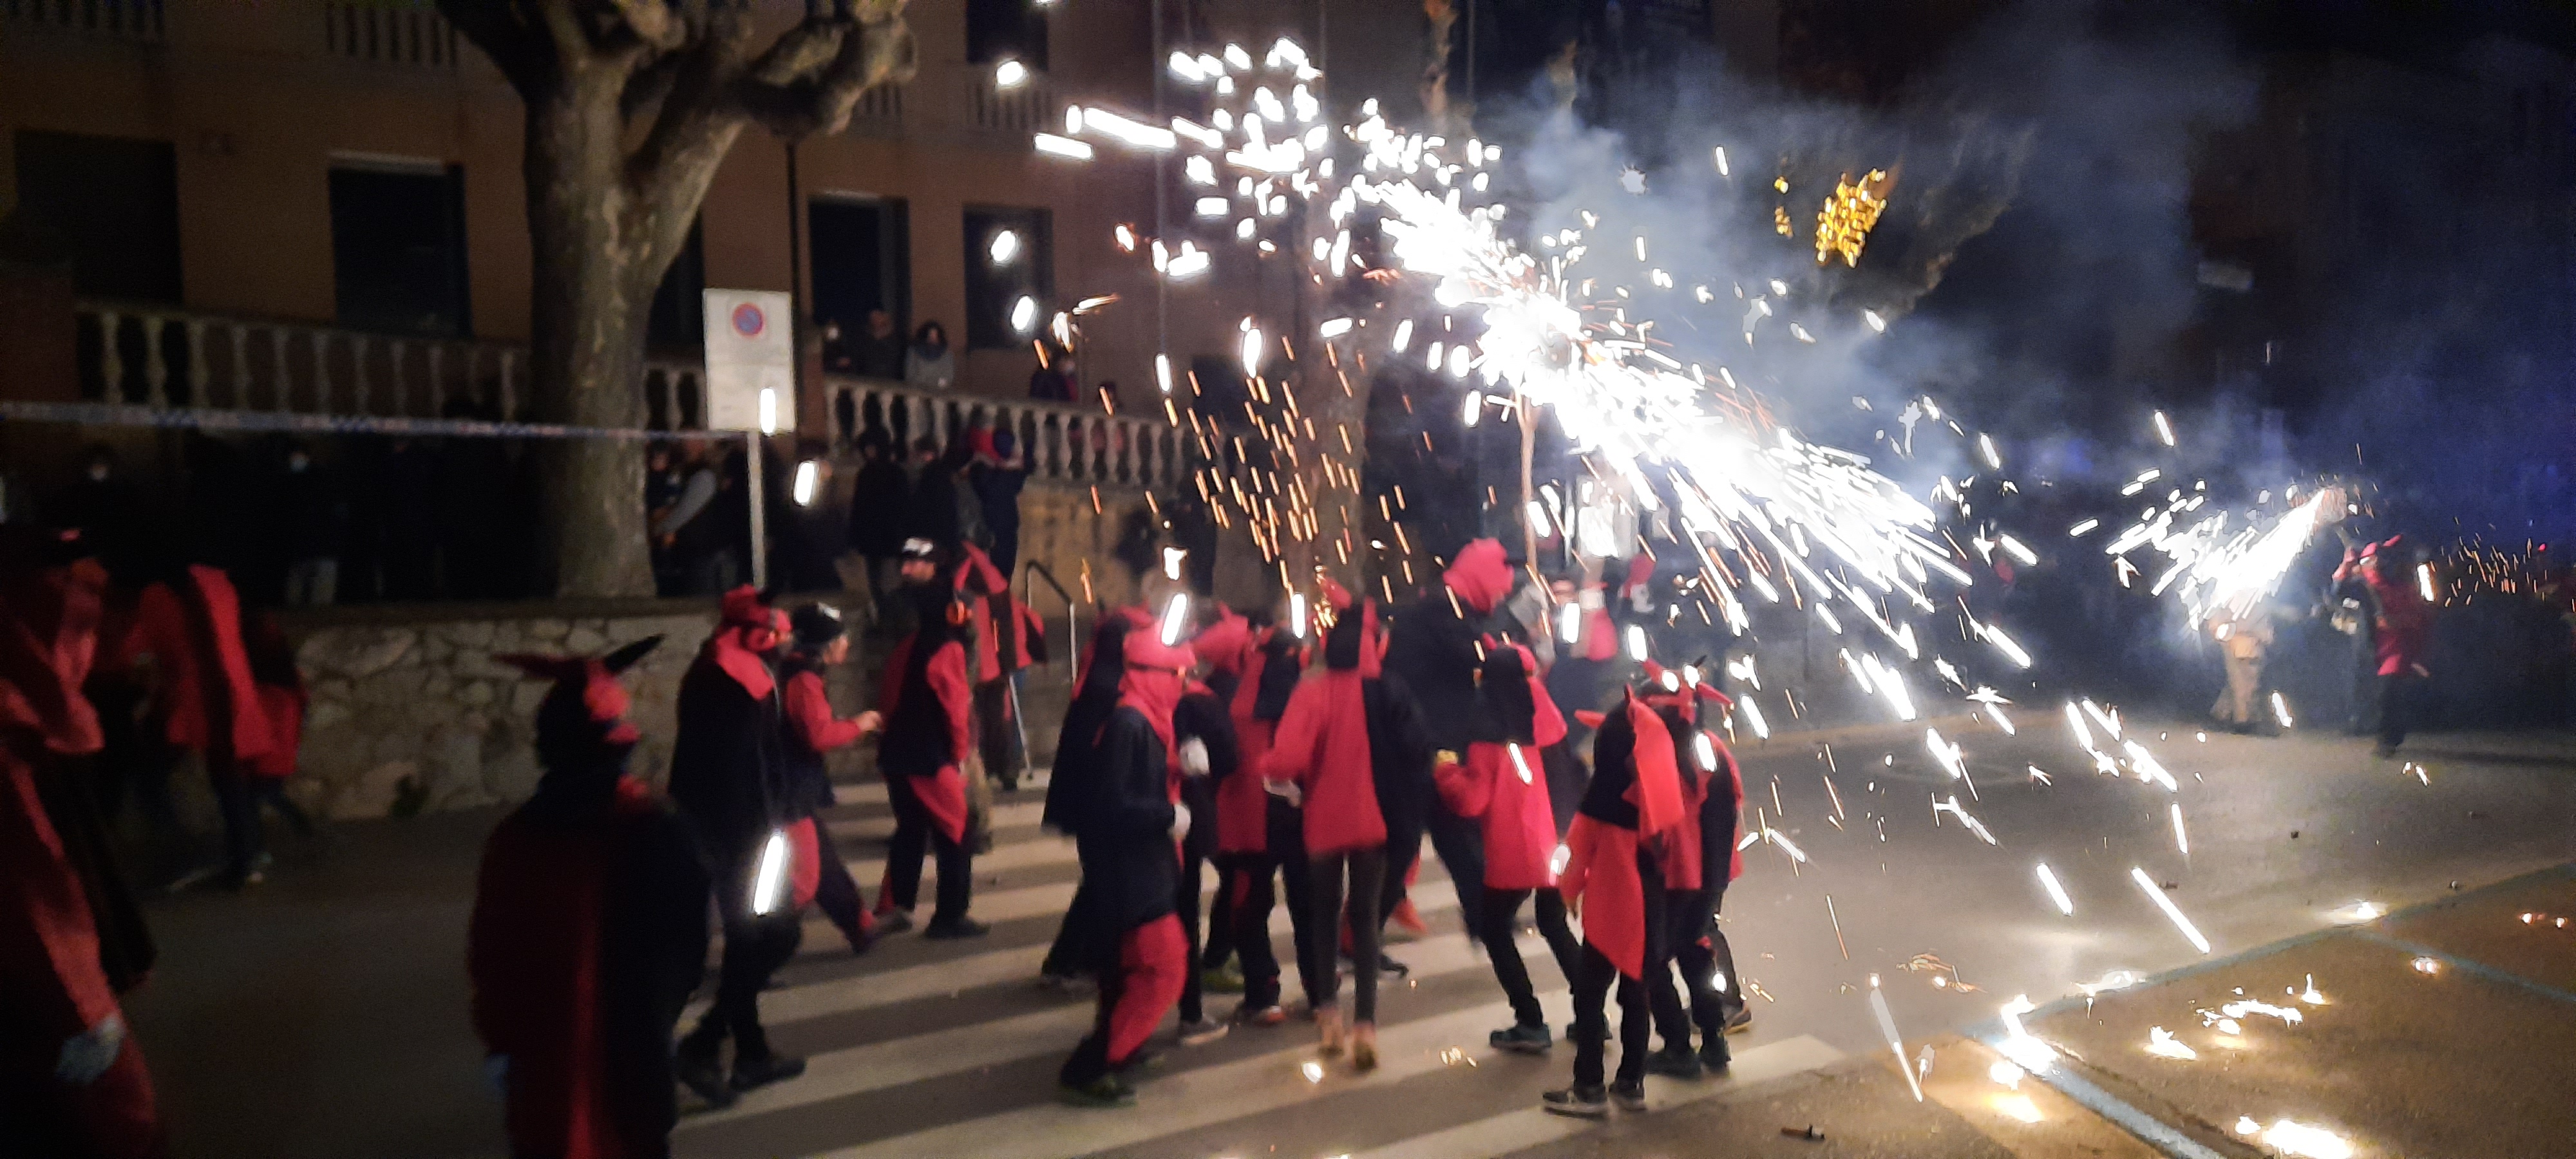 Festa Major de Santa Llúcia i Nadal 2021 - Foto 46389182